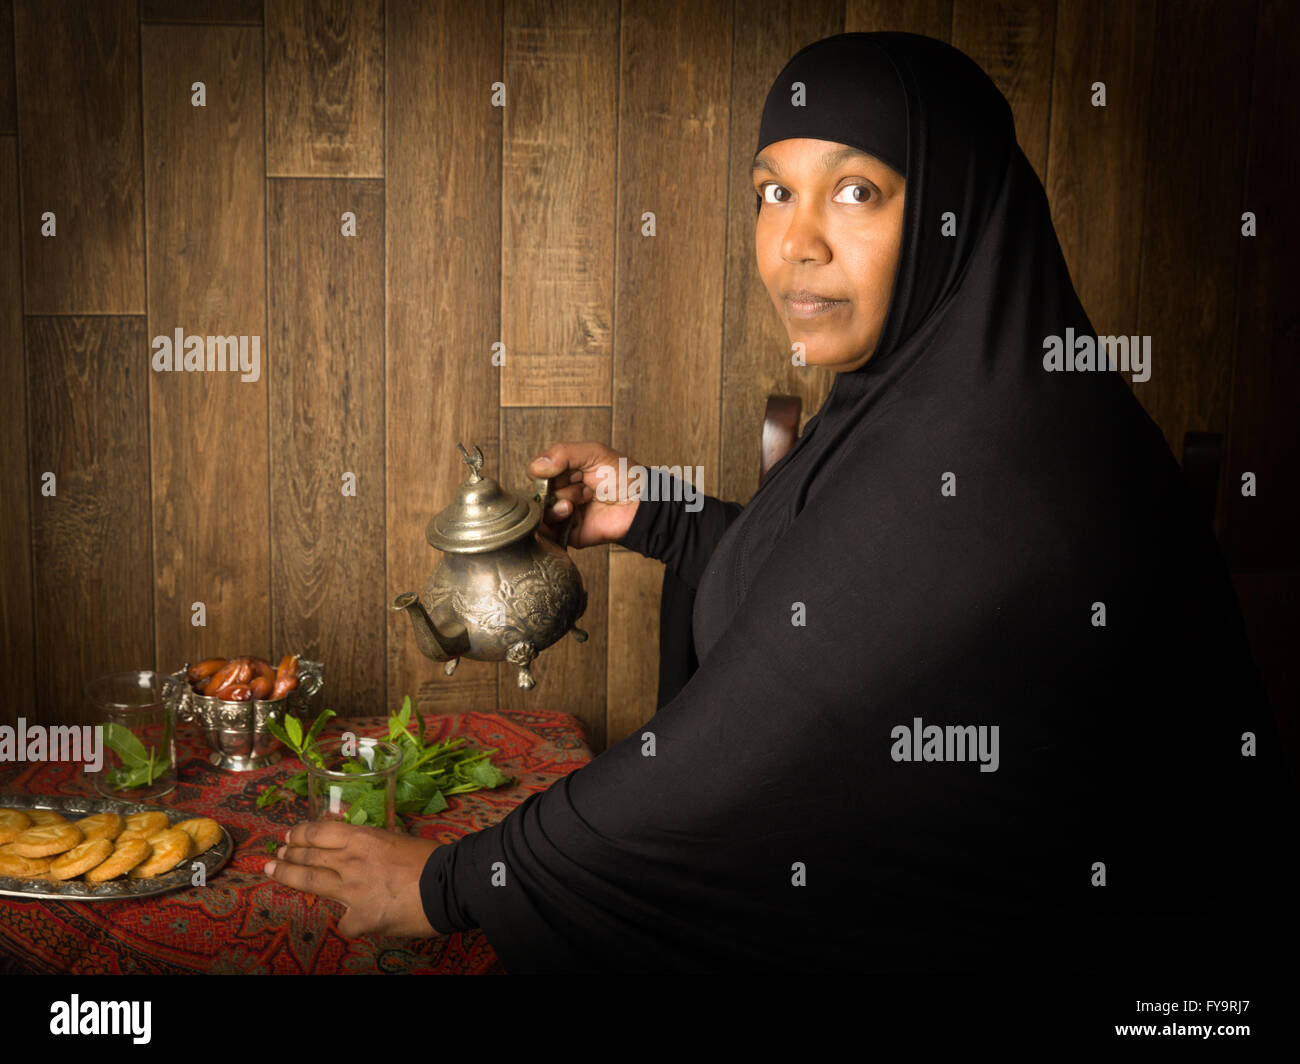 Smiling muslim woman pouring thé à la menthe la manière traditionnelle Banque D'Images